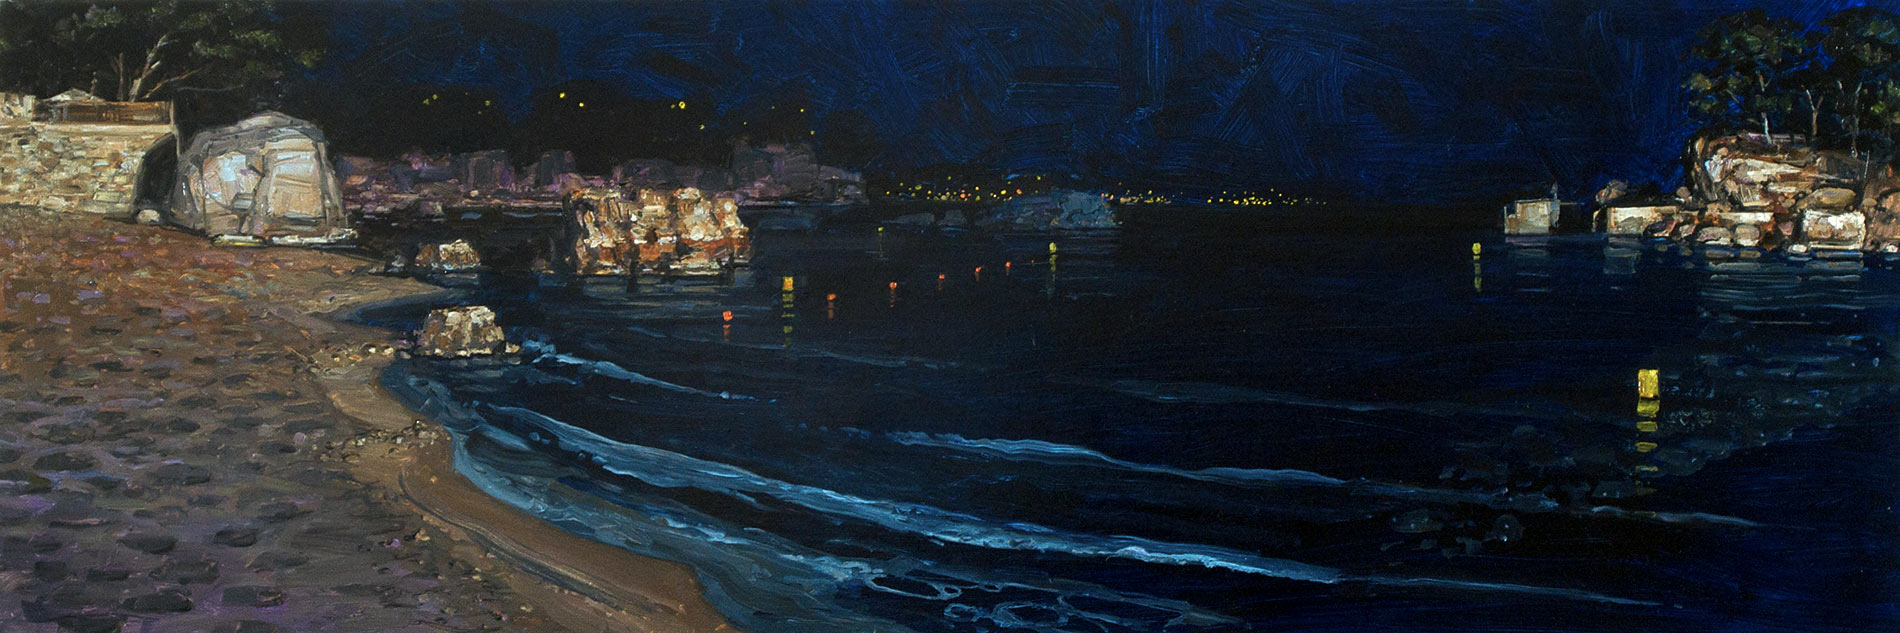 Le bruit de la nuit 2. Huile sur toile, 50 x 150 cm, 2013